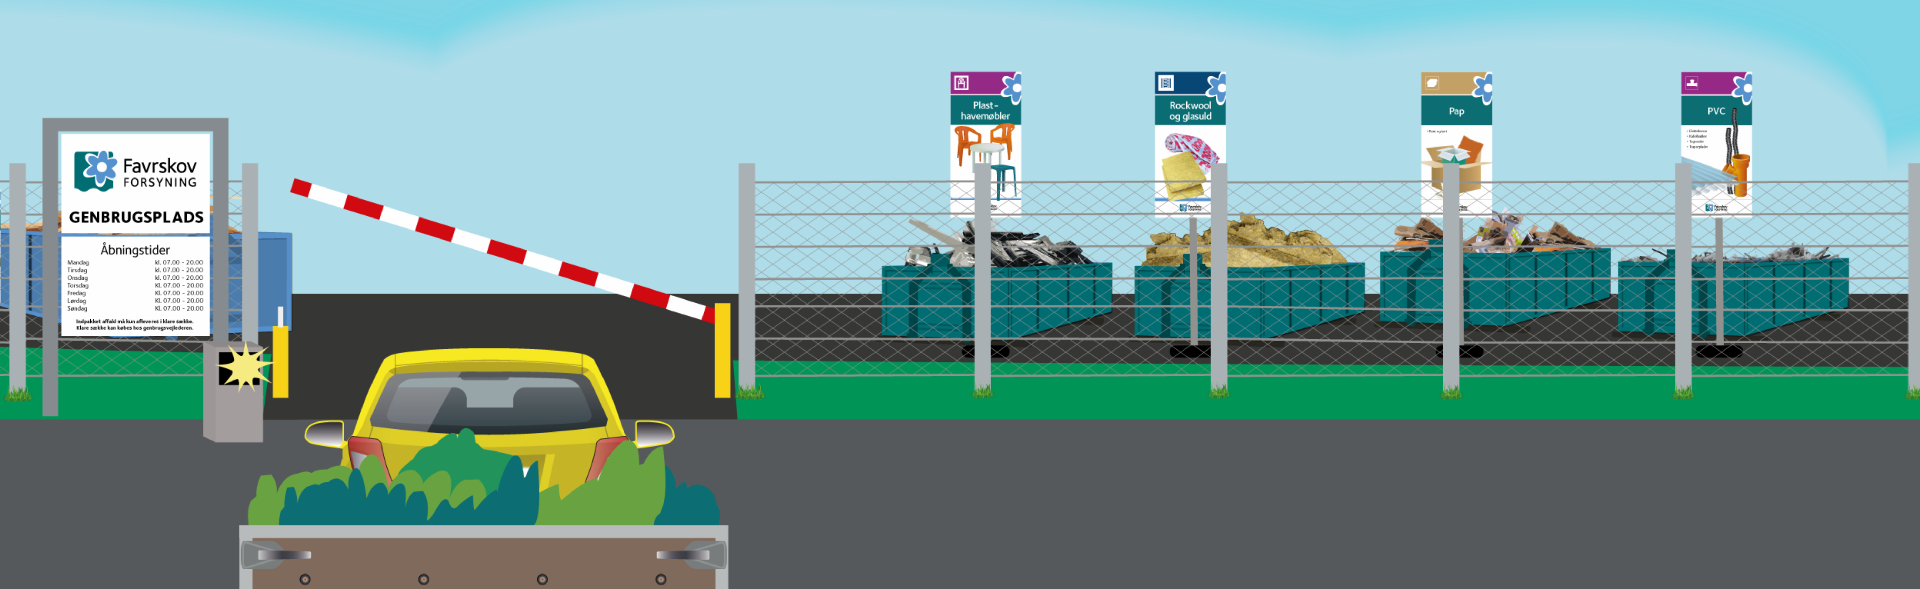 grafisk tegning af bil der kører ind på genbrugsplads med trailer og haveaffald